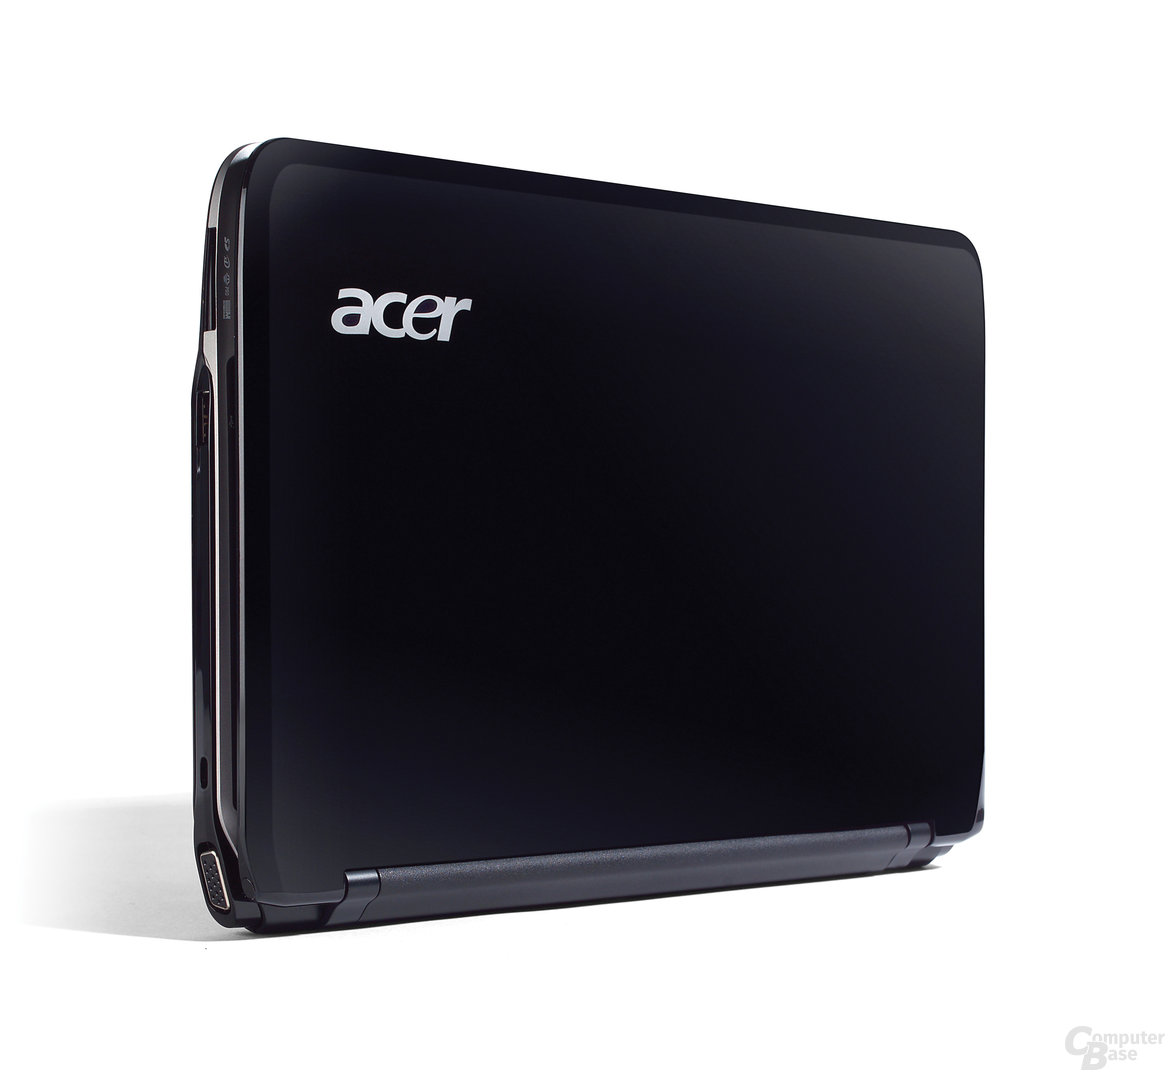 Acer Aspire one 751 in schwarz